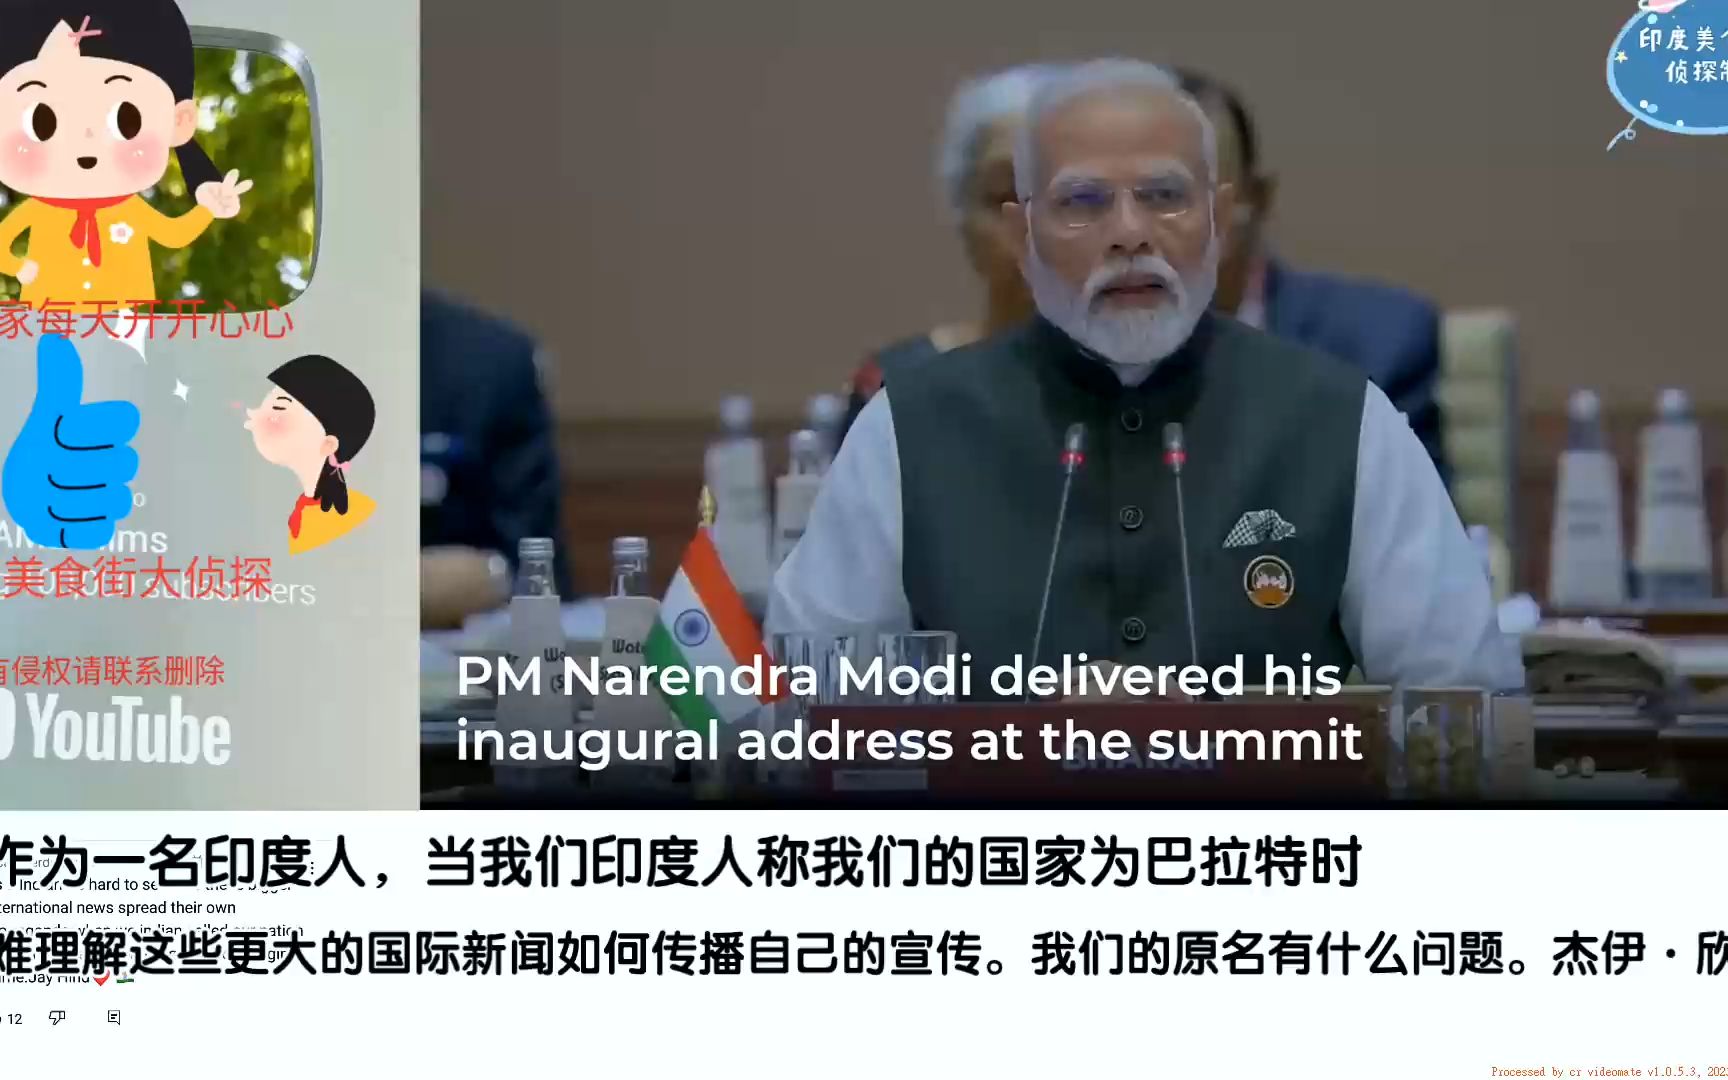 今天莫迪在德里g20峰会上把印度改成为巴拉特引起印度网友争吵